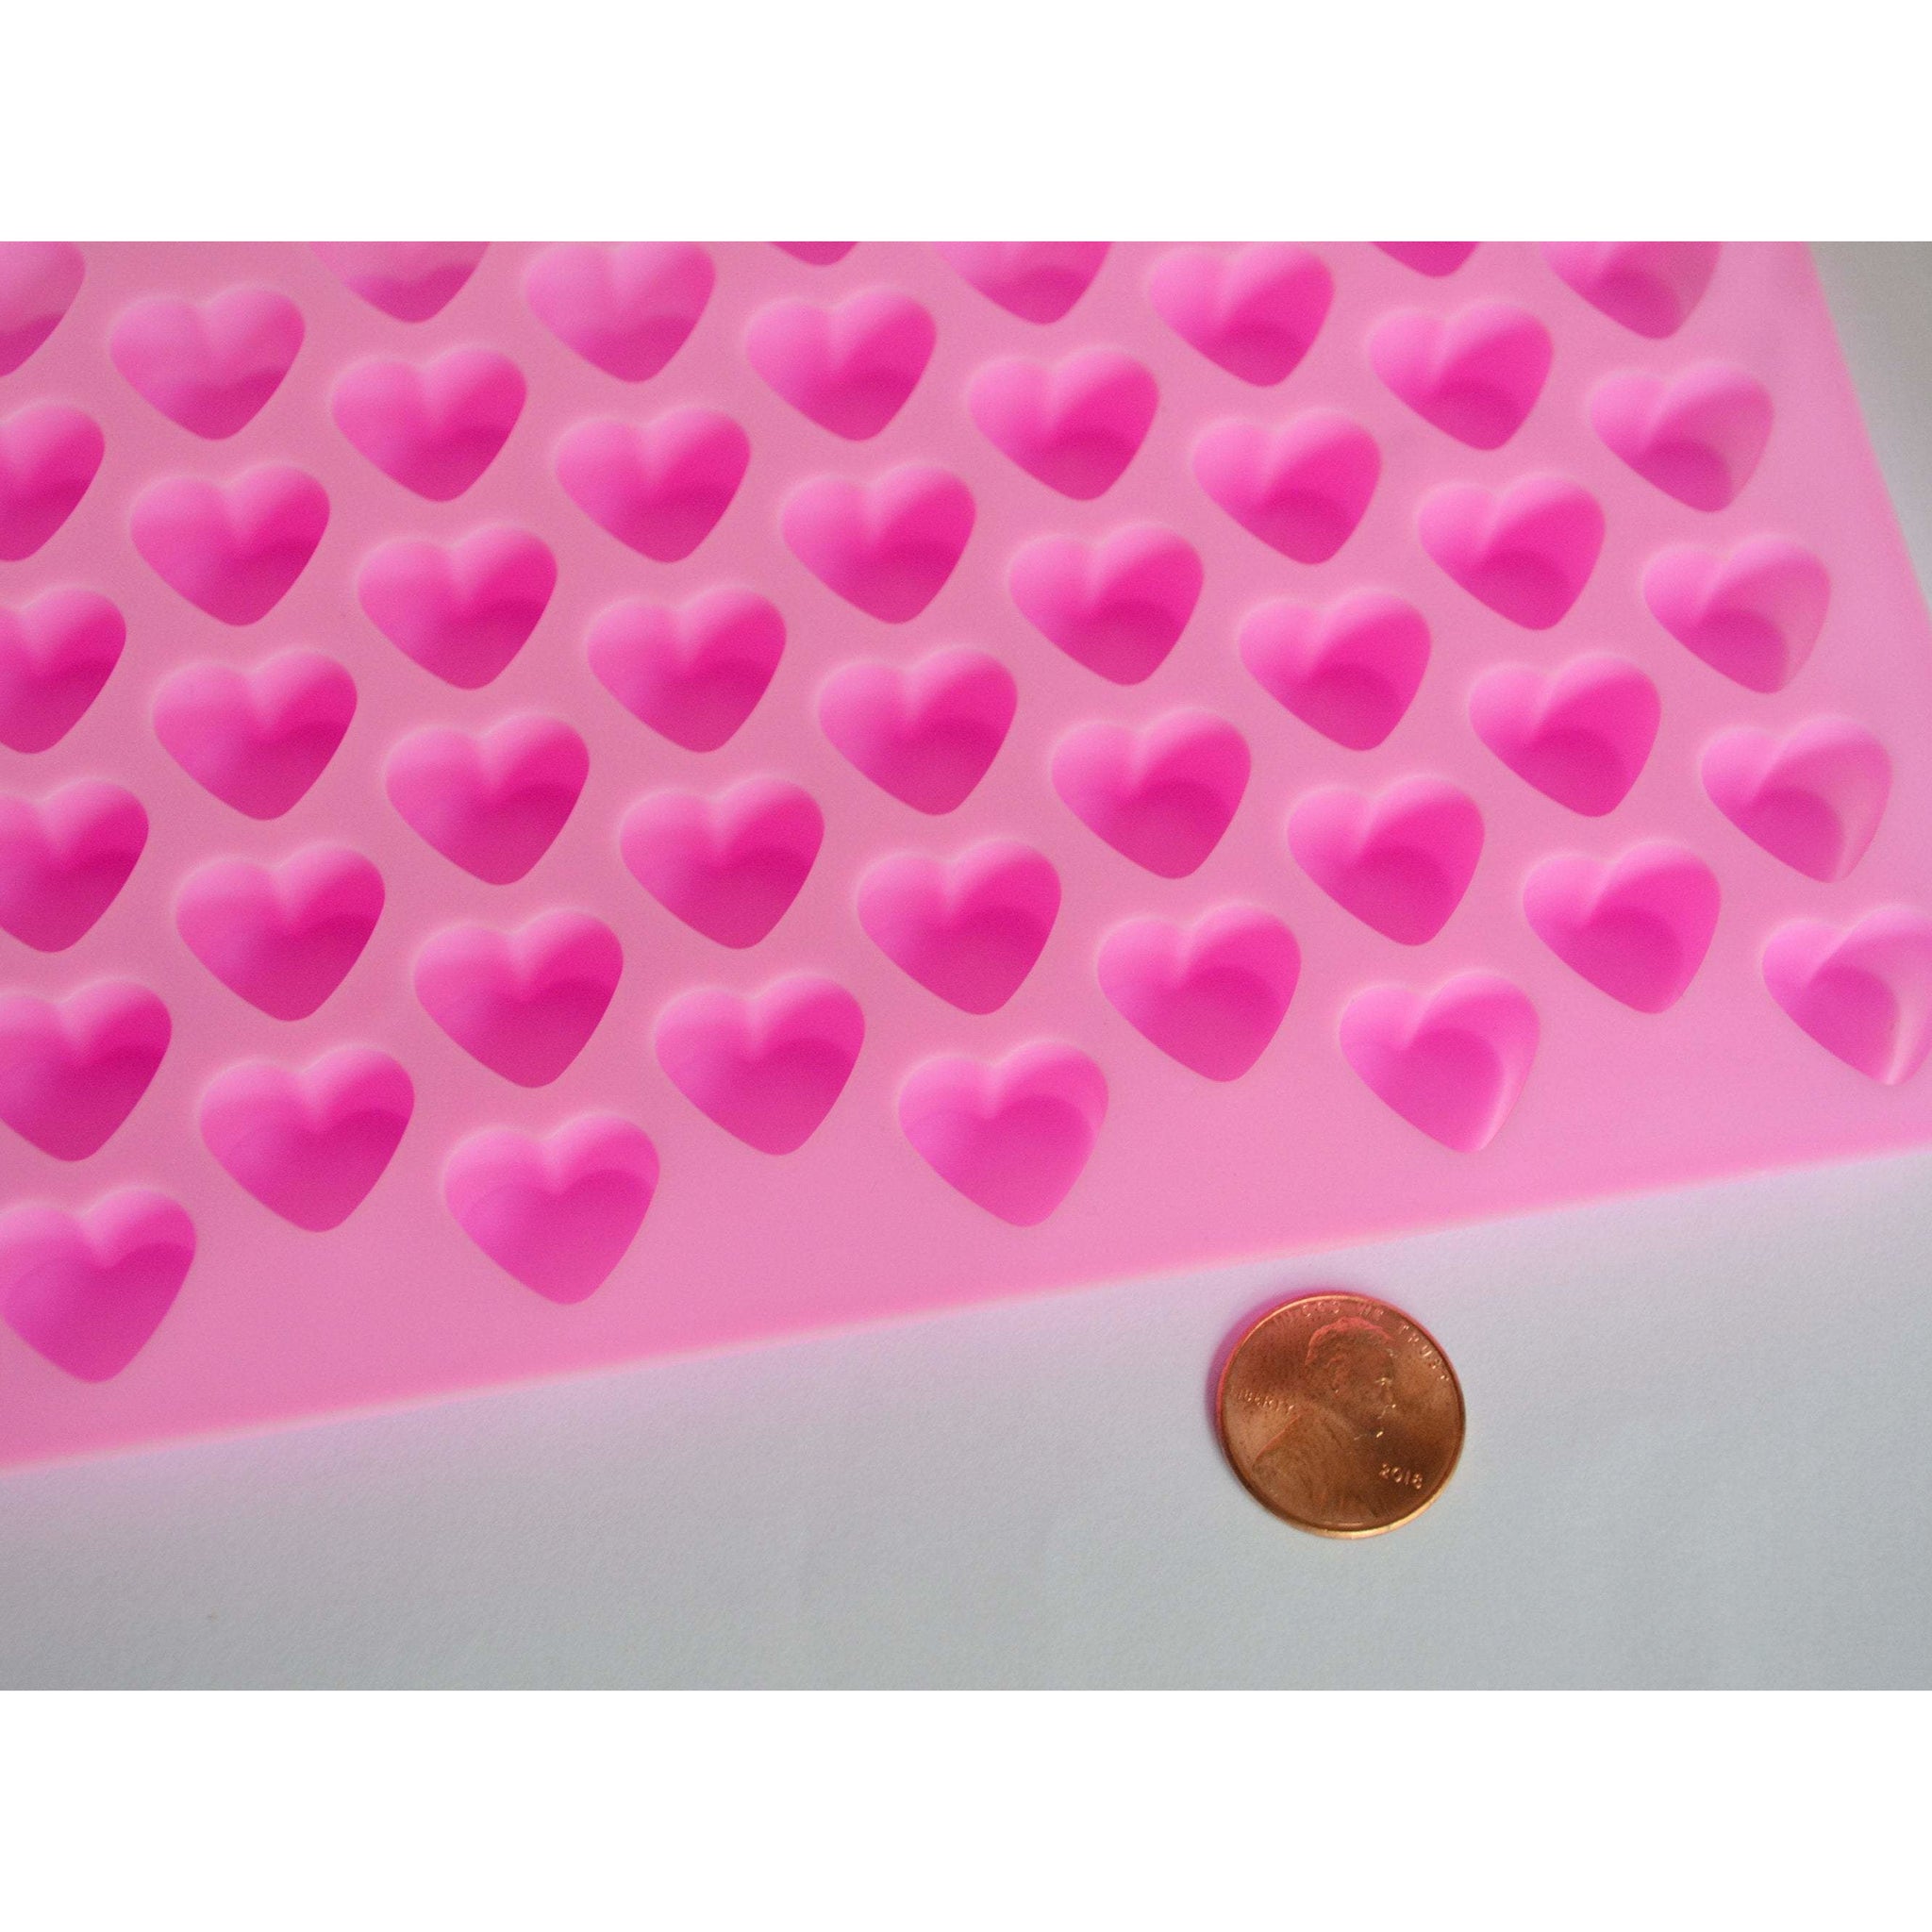 Mini Silicone Mold-6 Cavity Heart 2.5X2.5X1.25